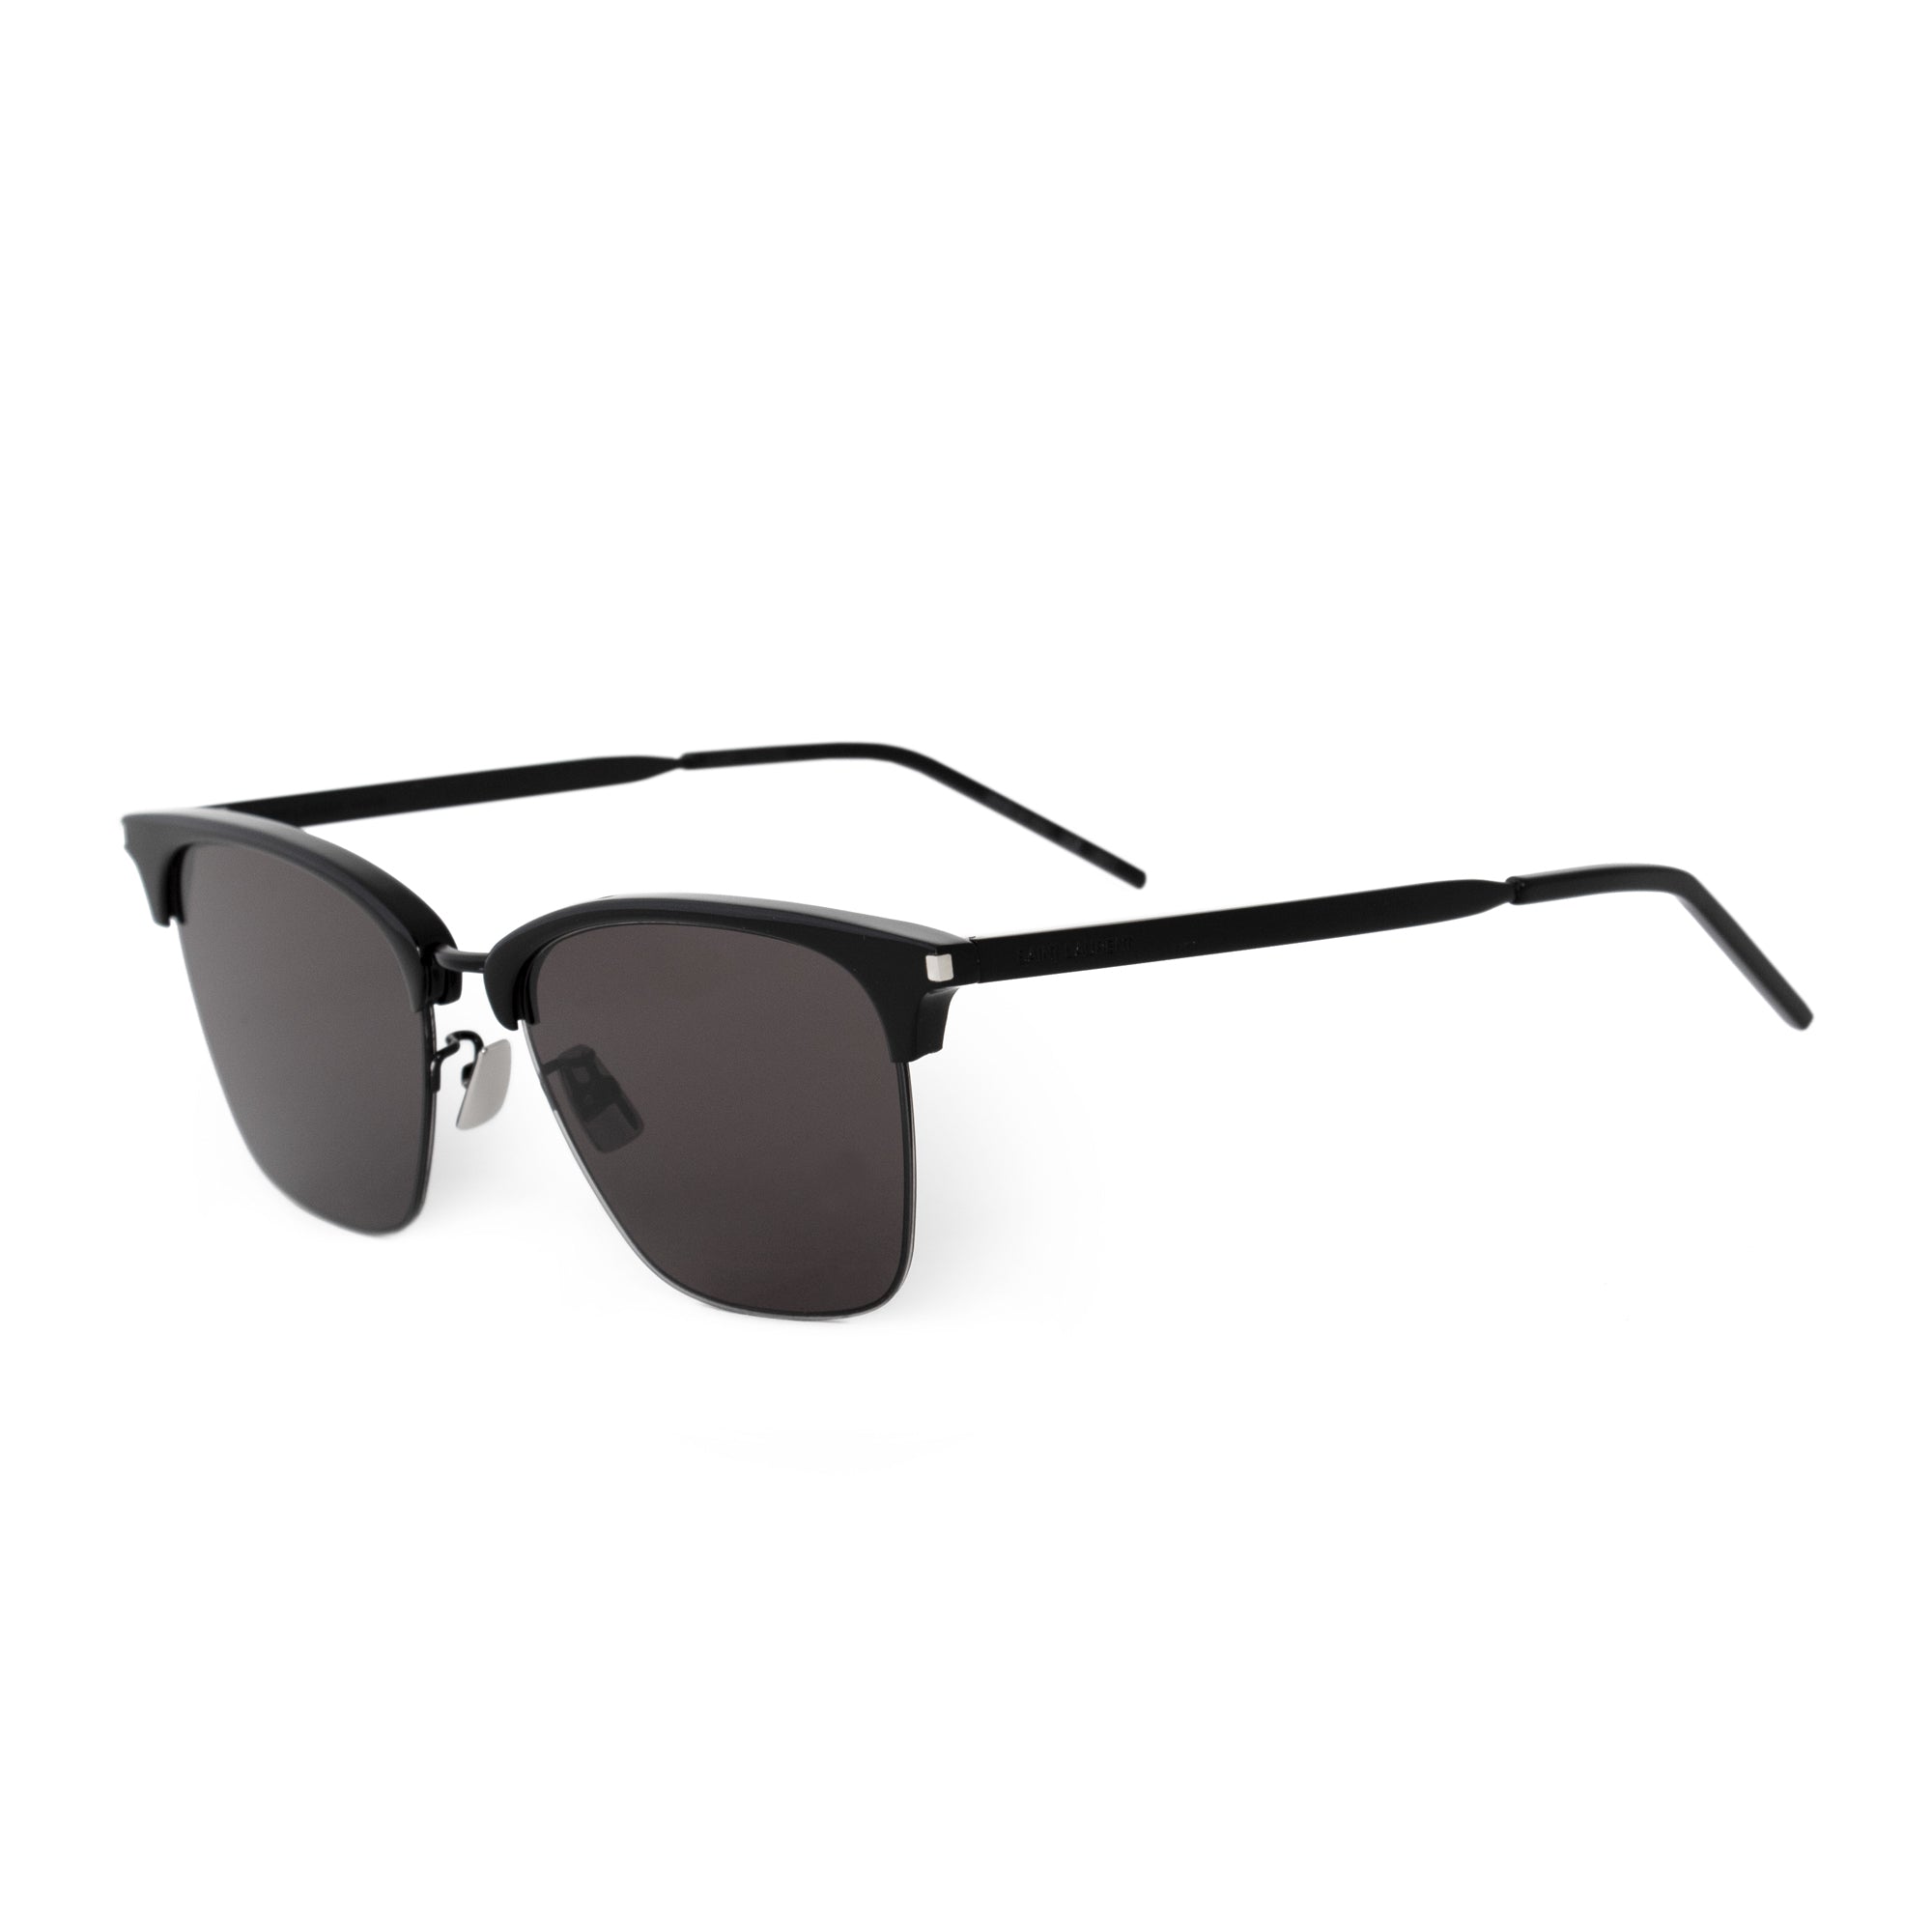 Saint Laurent Square Sunglasses SL340 001 55